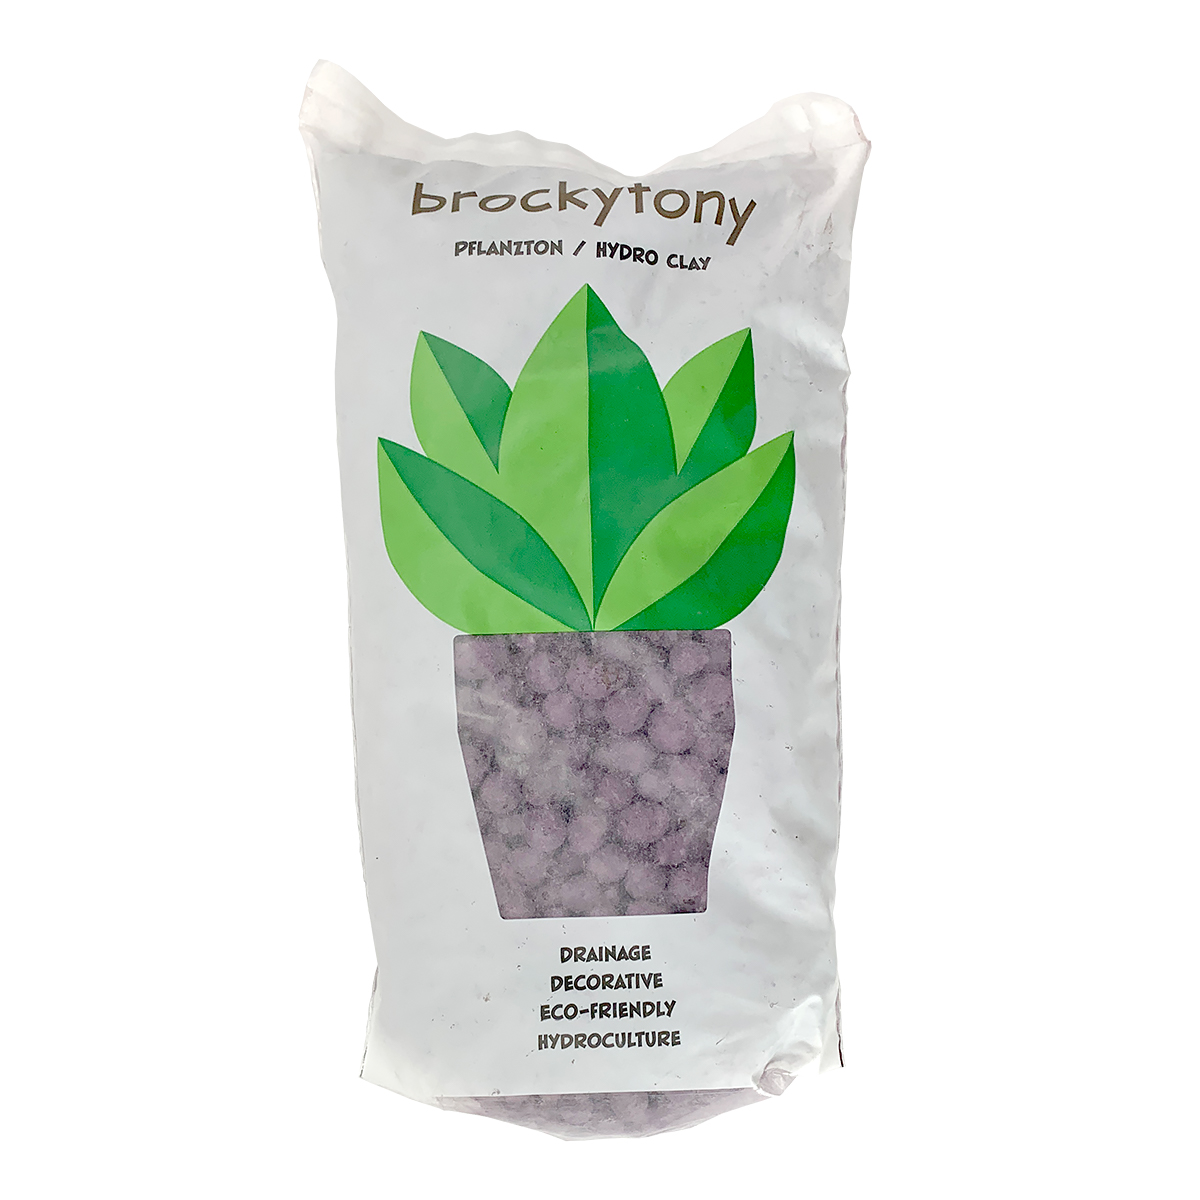 Brochytony Lilac Pflanzton Hydro Clay 2L